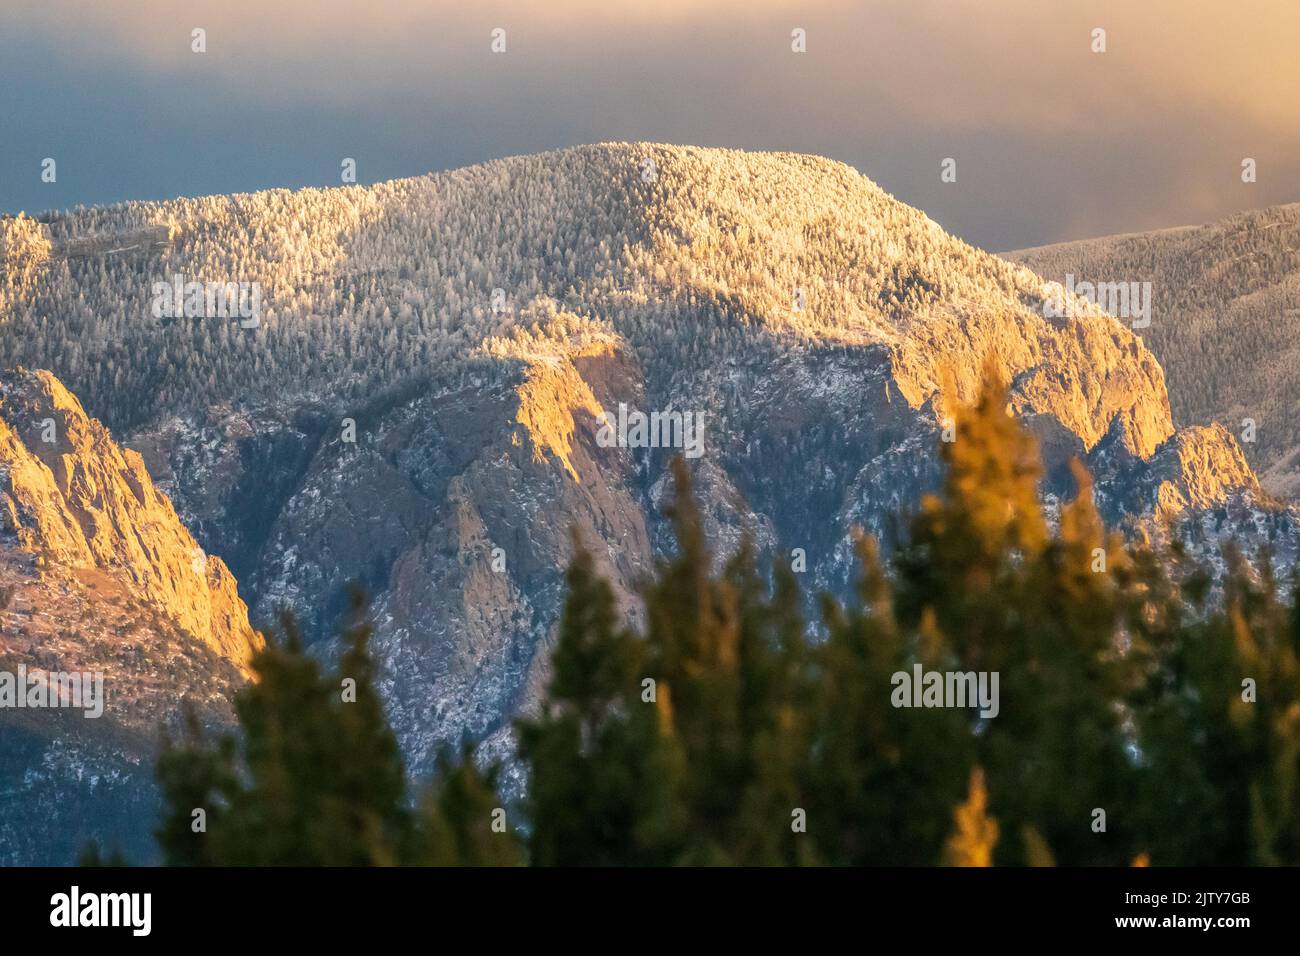 La catena montuosa di Sandia ad Albuquerque, New Mexico, è immersa nella luce dorata nel tardo pomeriggio Foto Stock